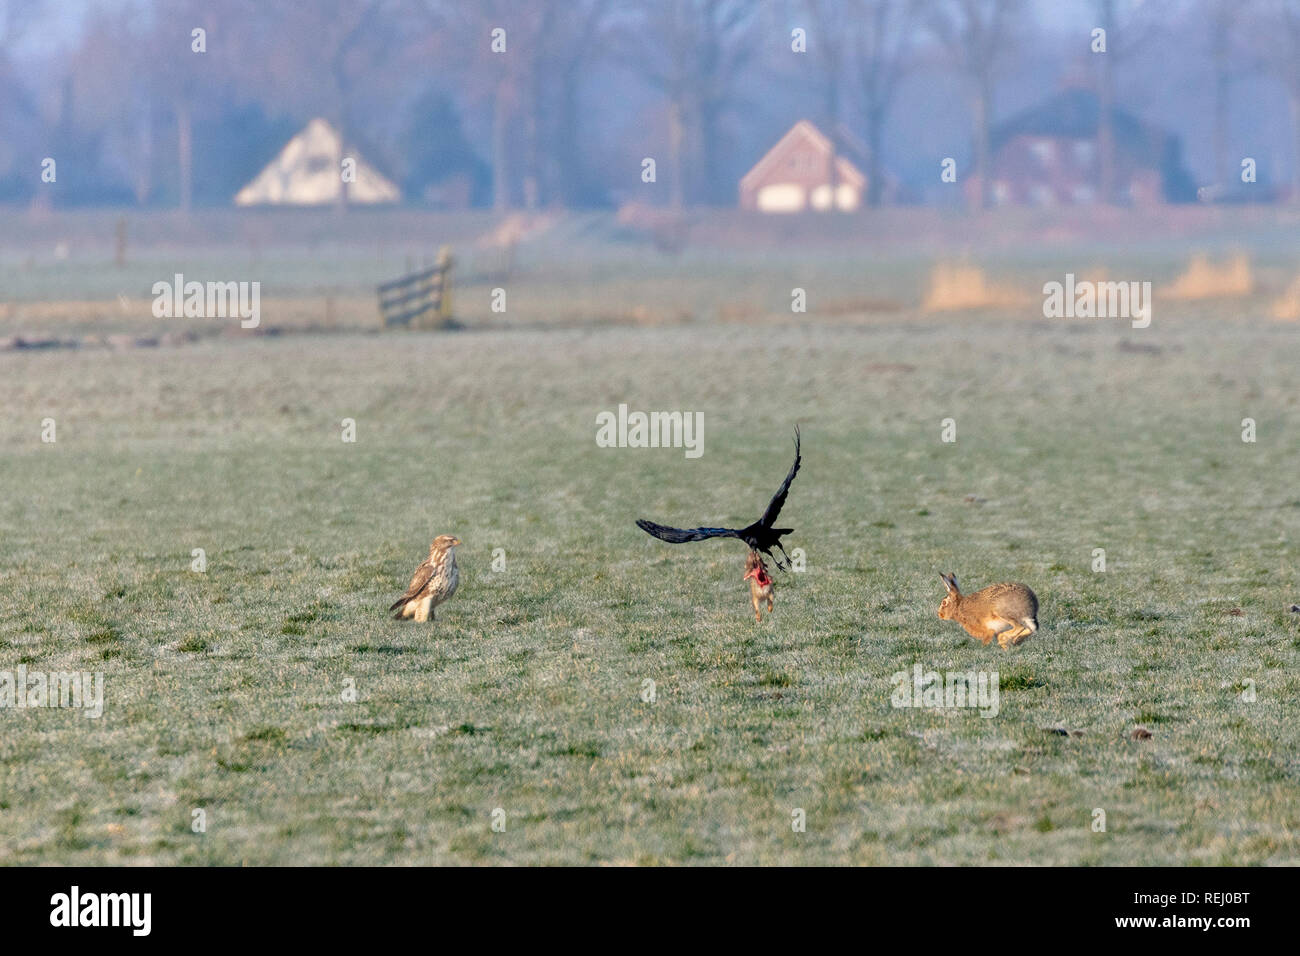 I Paesi Bassi, Eemnes, Eem polder, Eempolder. Un corvo vola con la carcassa di una lepre giovane, dopo aver rubato, da la poiana. Foto Stock